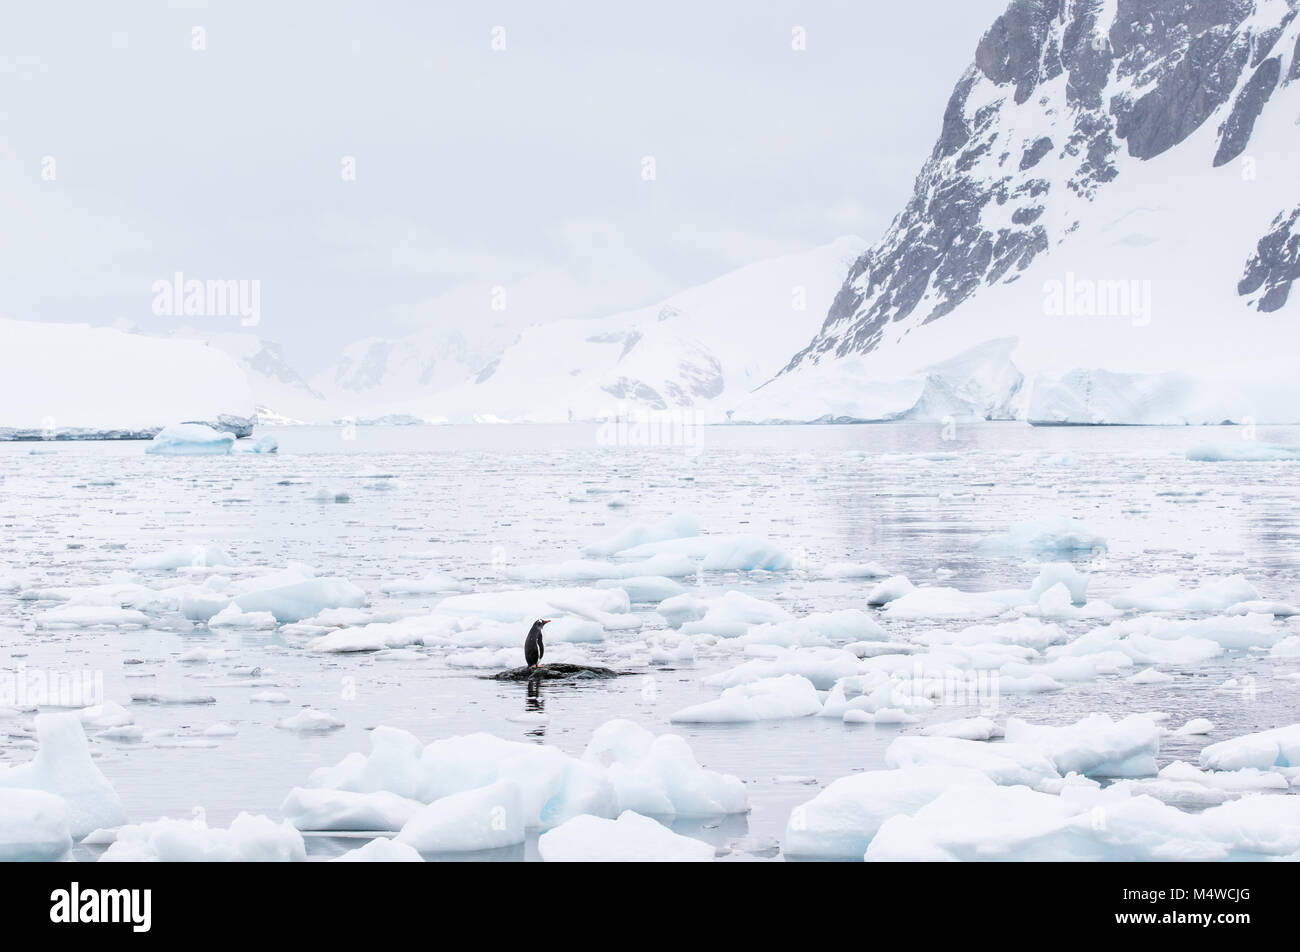 Le dirigeant d'une Gentoo pingouin debout sur un rocher submergé partiellement entouré par la glace de mer à l'Île Danco, Antarctique. Banque D'Images